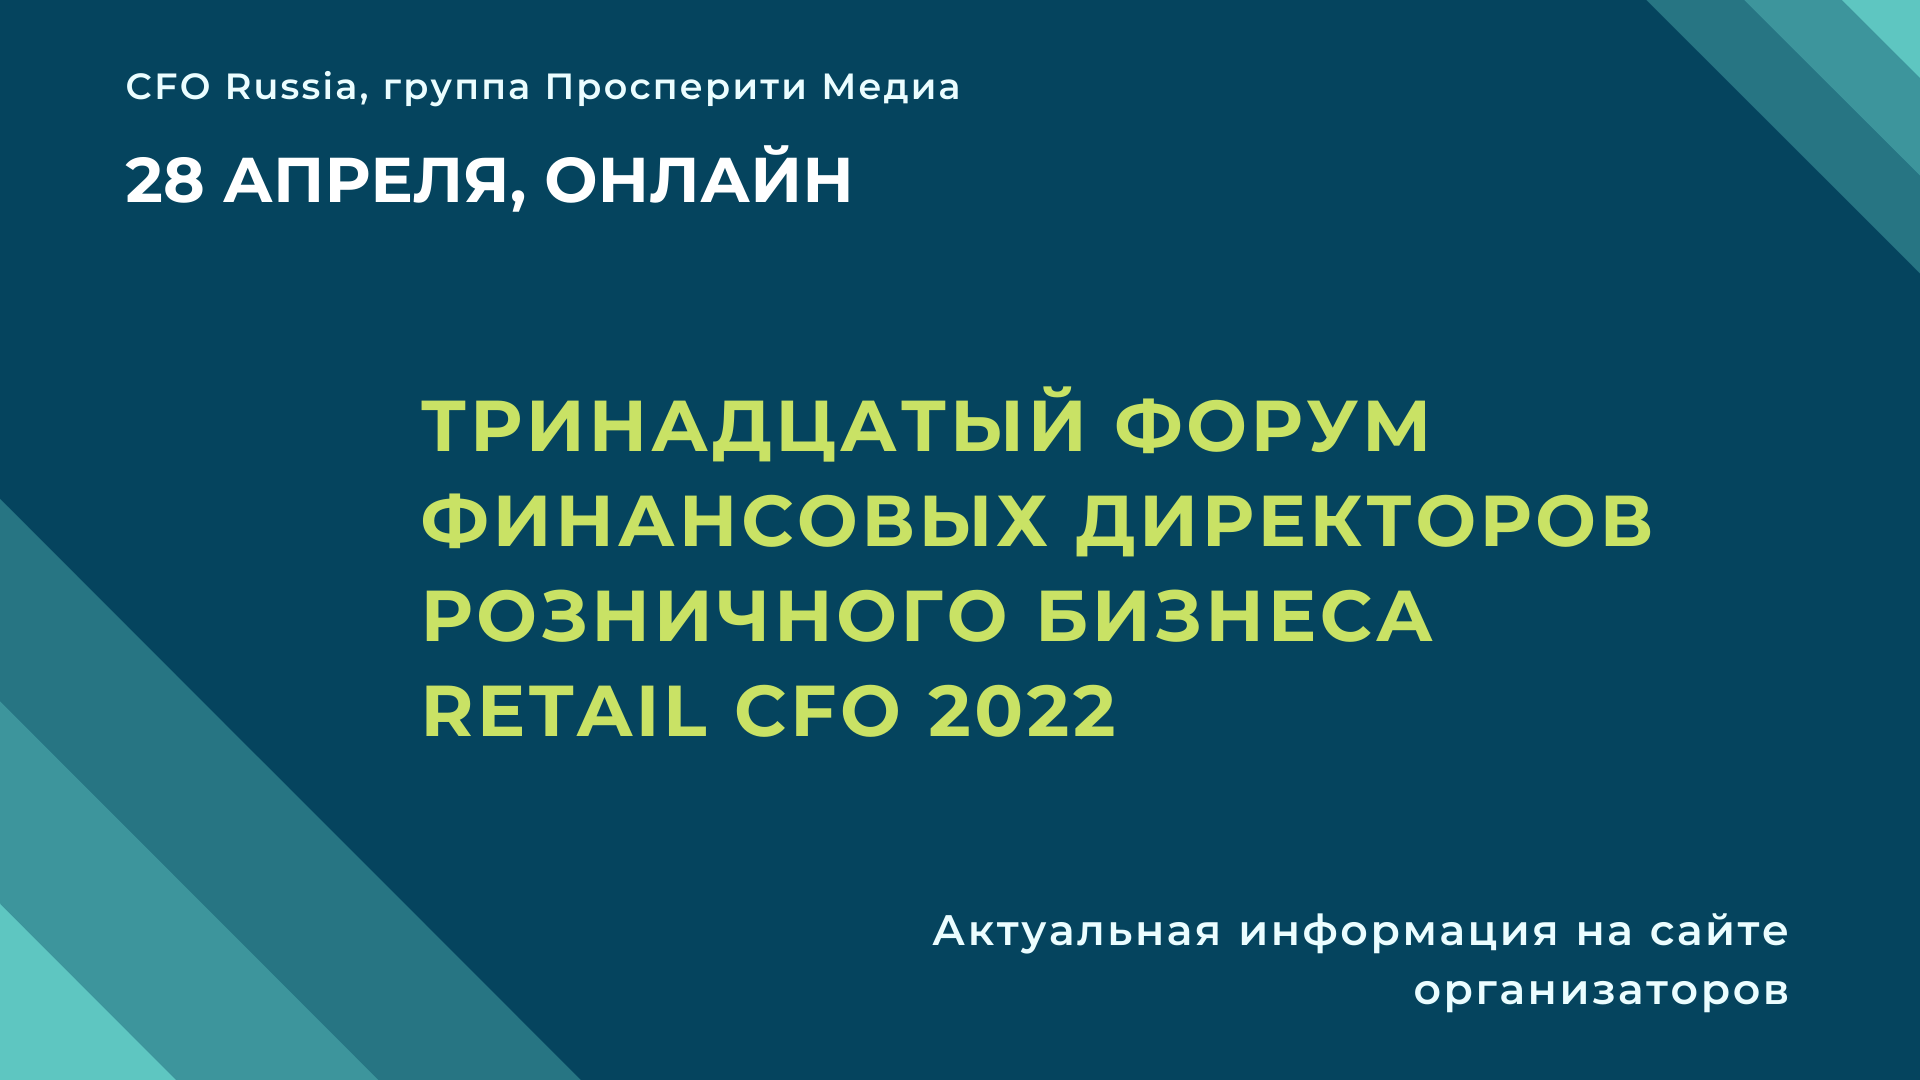 Тринадцатый форум финансовых директоров розничного бизнеса Retail CFO 2022